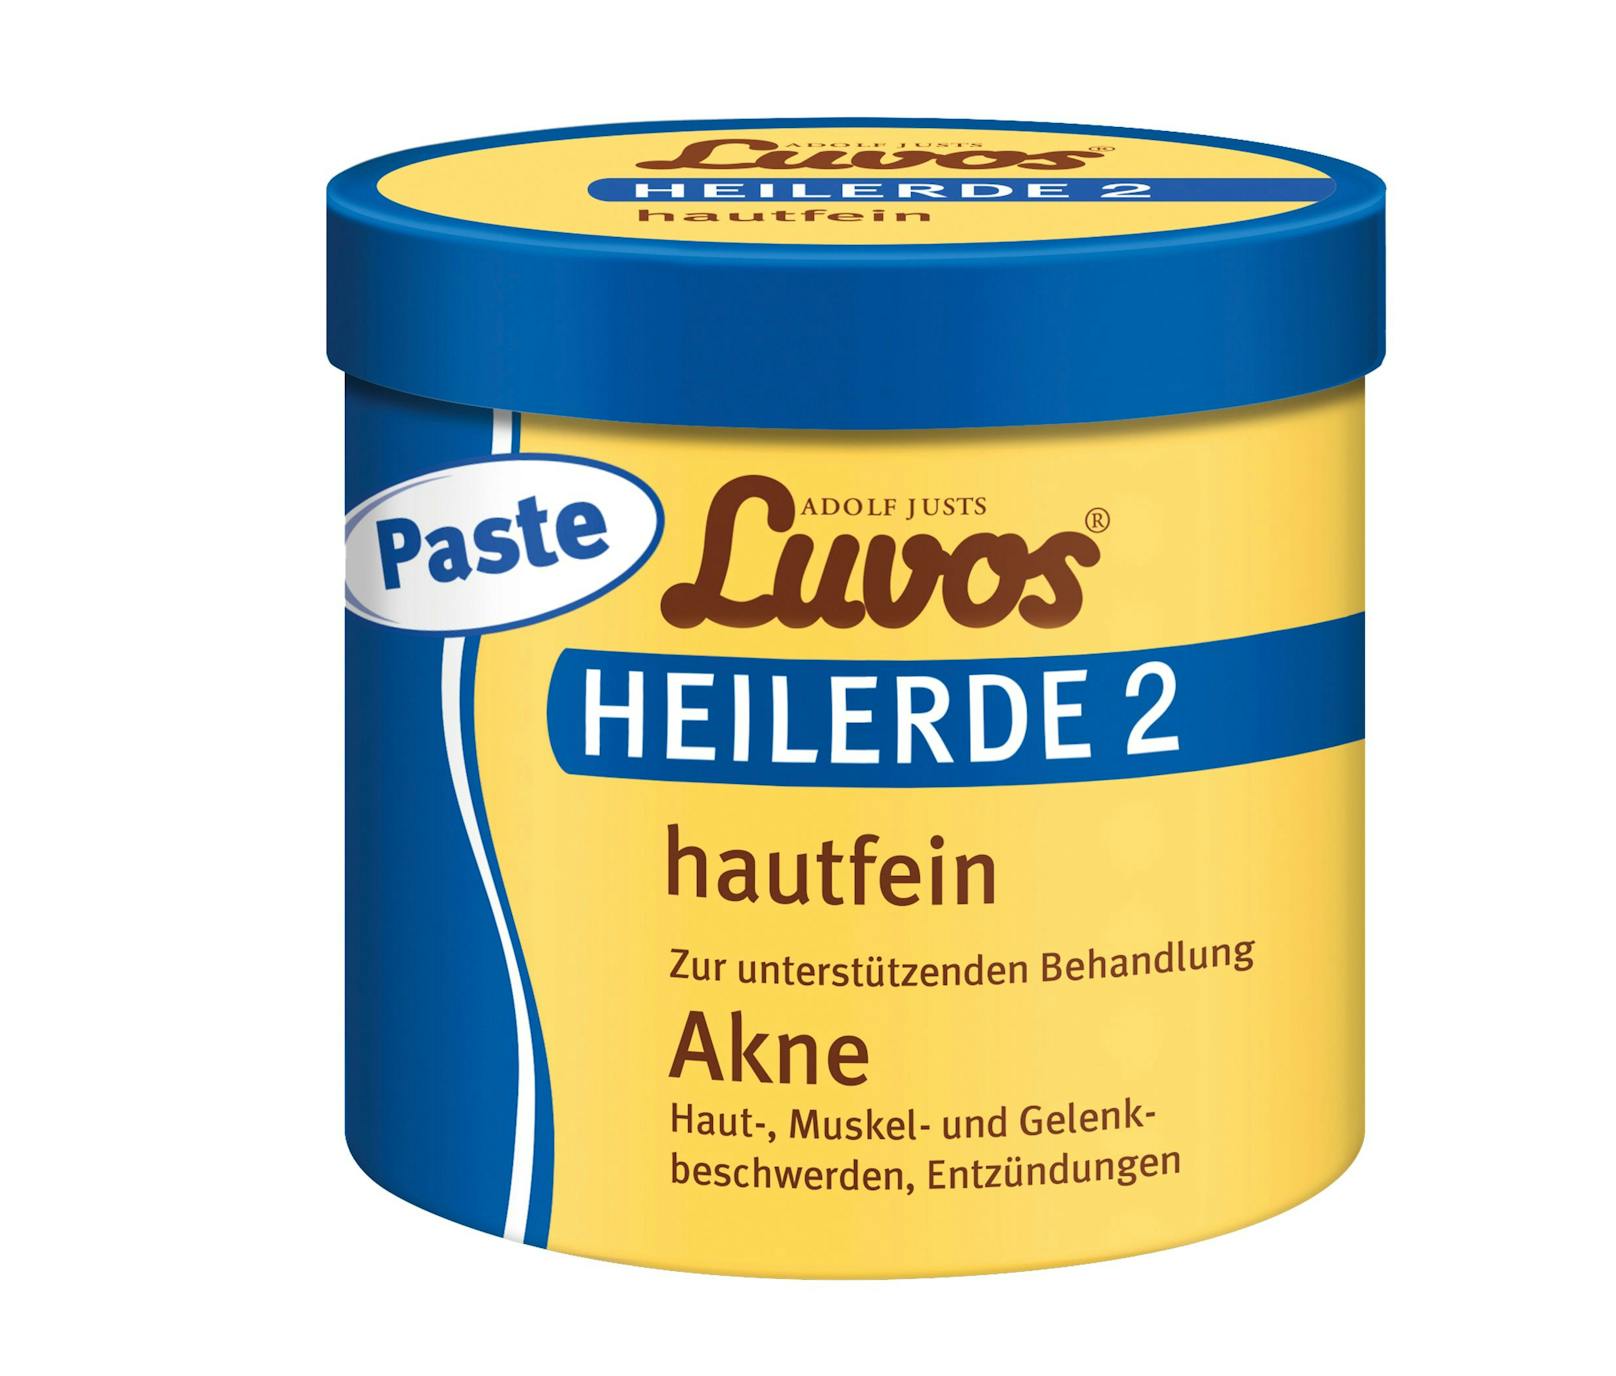 Luvos® Heilerde 2: hautfein.  Zur unterstützenden Behandlung bei Akne, Haut-, Muskel- und Gelenkbeschwerden &amp; Entzündungen.